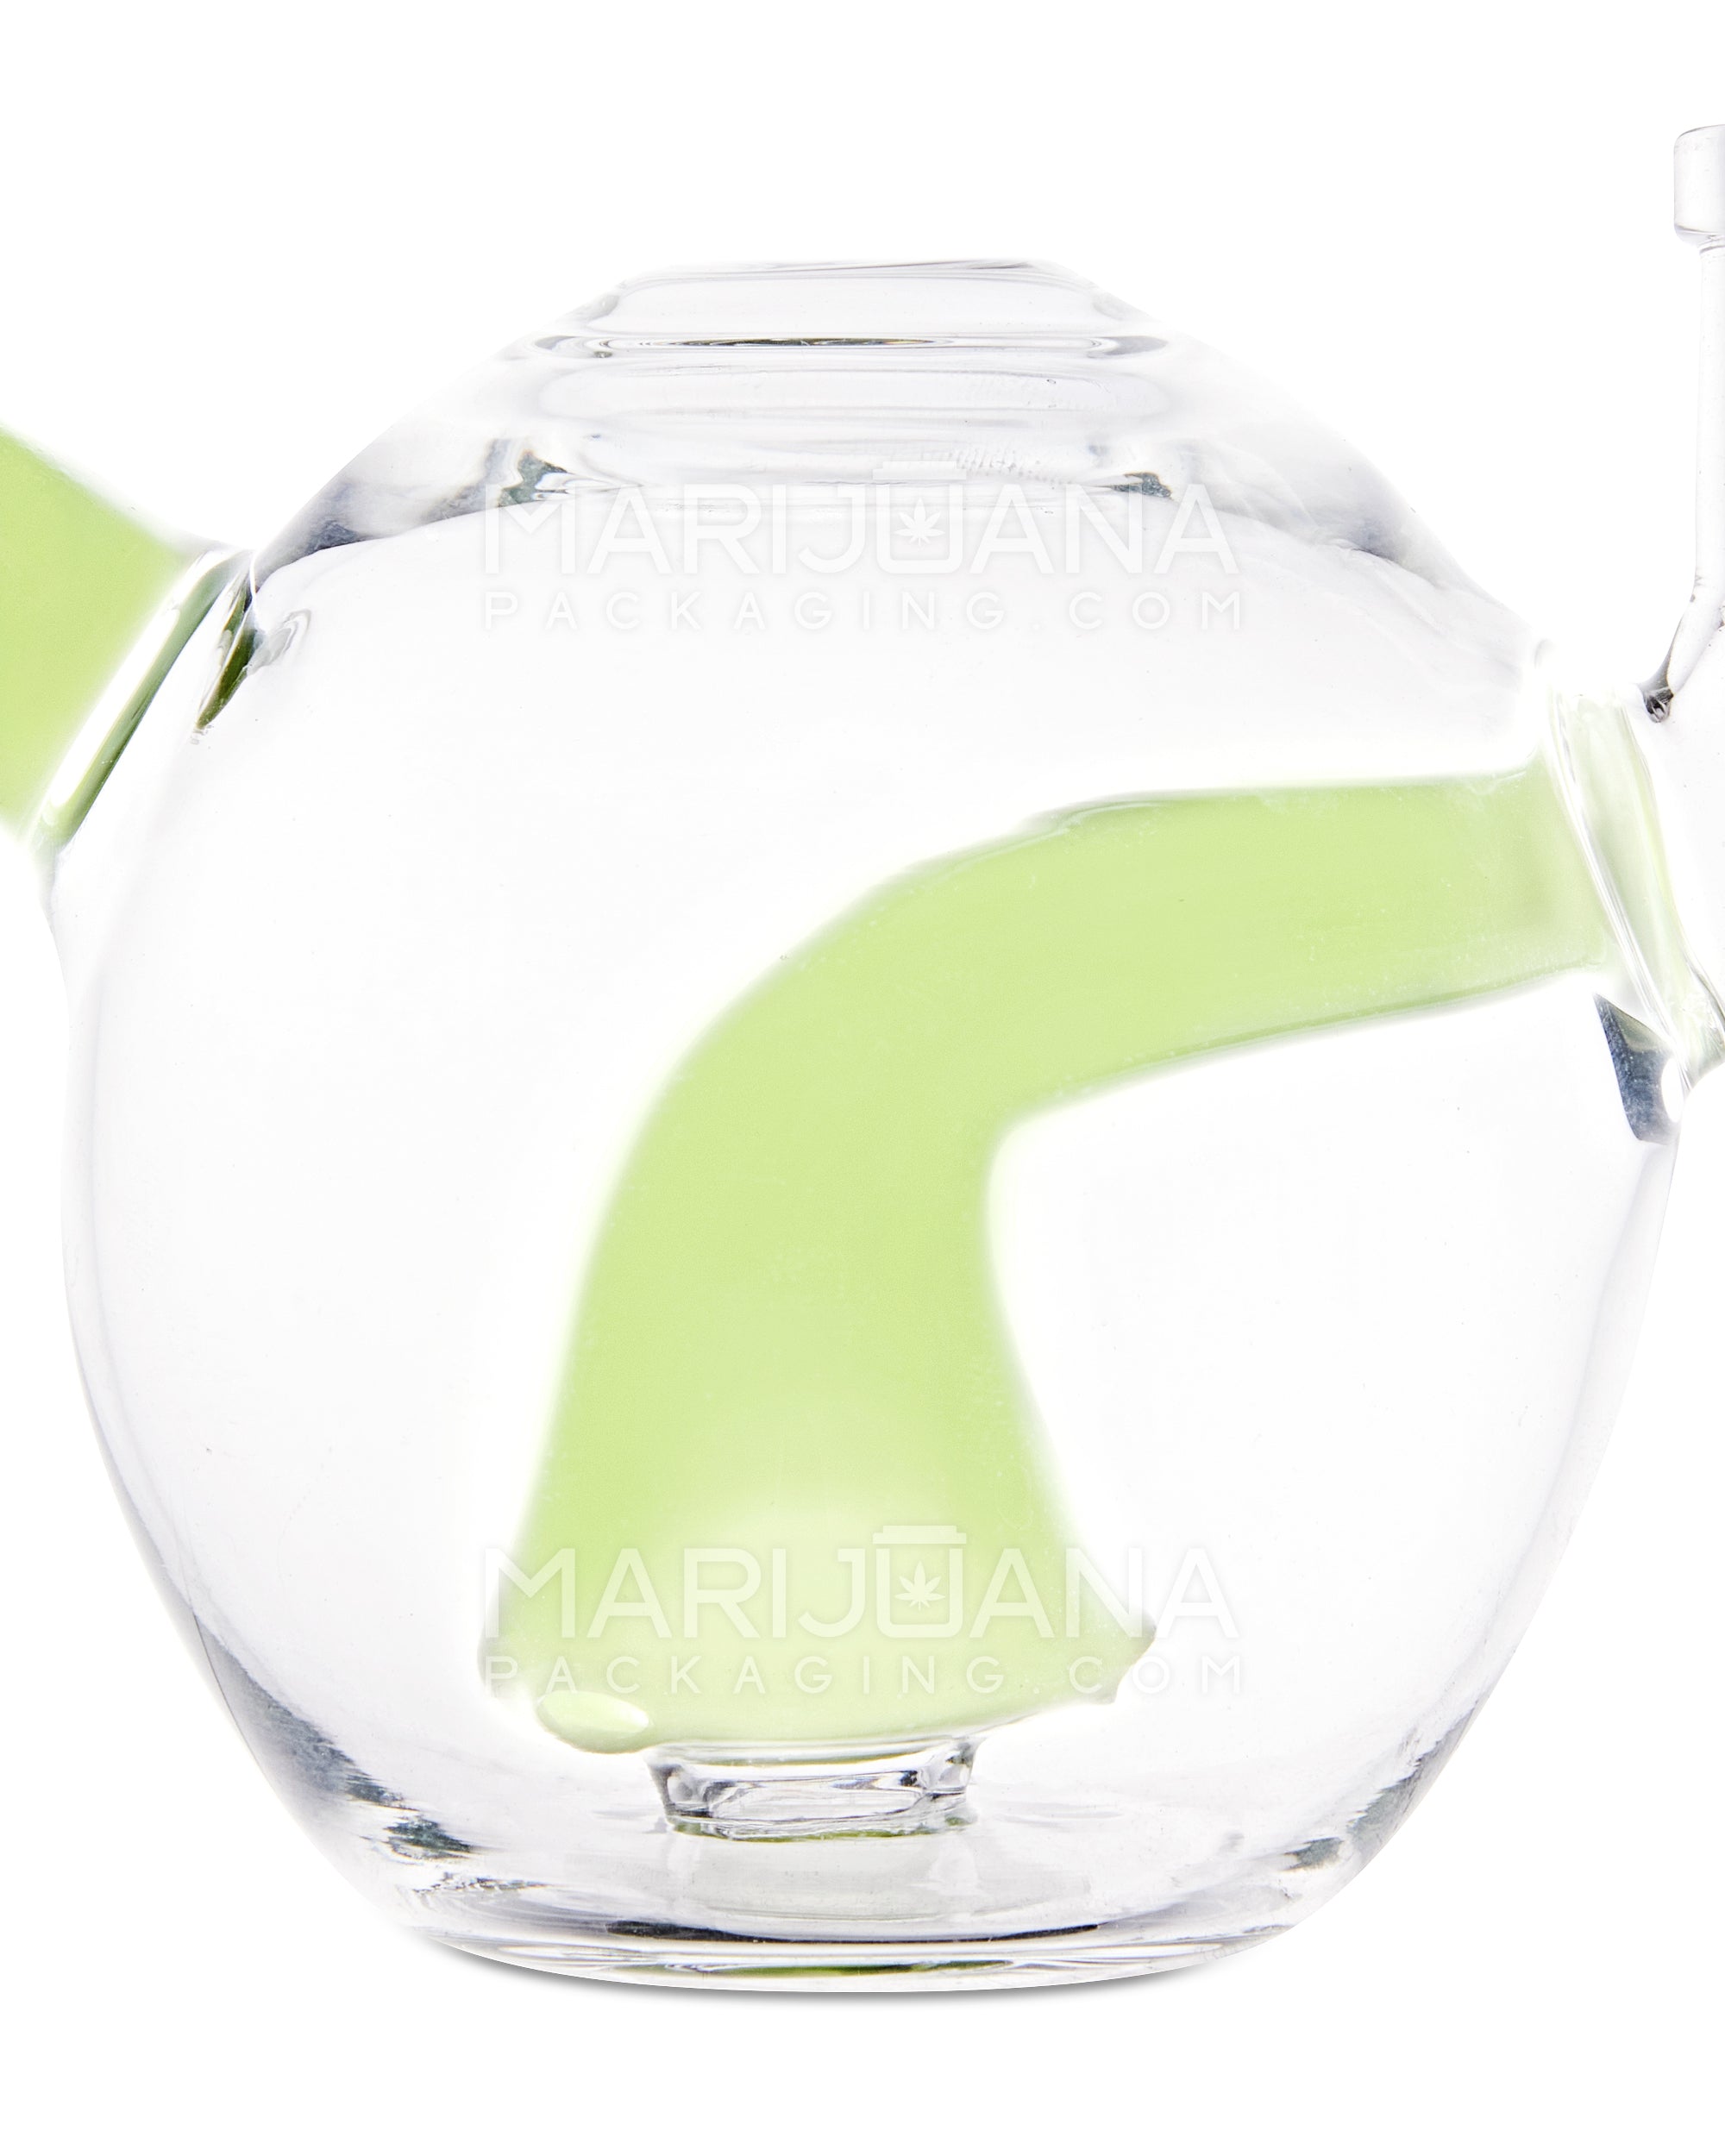 Mini Orb Tea Pot Glass Water Pipe w/ Showerhead Perc | 3in Tall - 14mm Bowl - Green